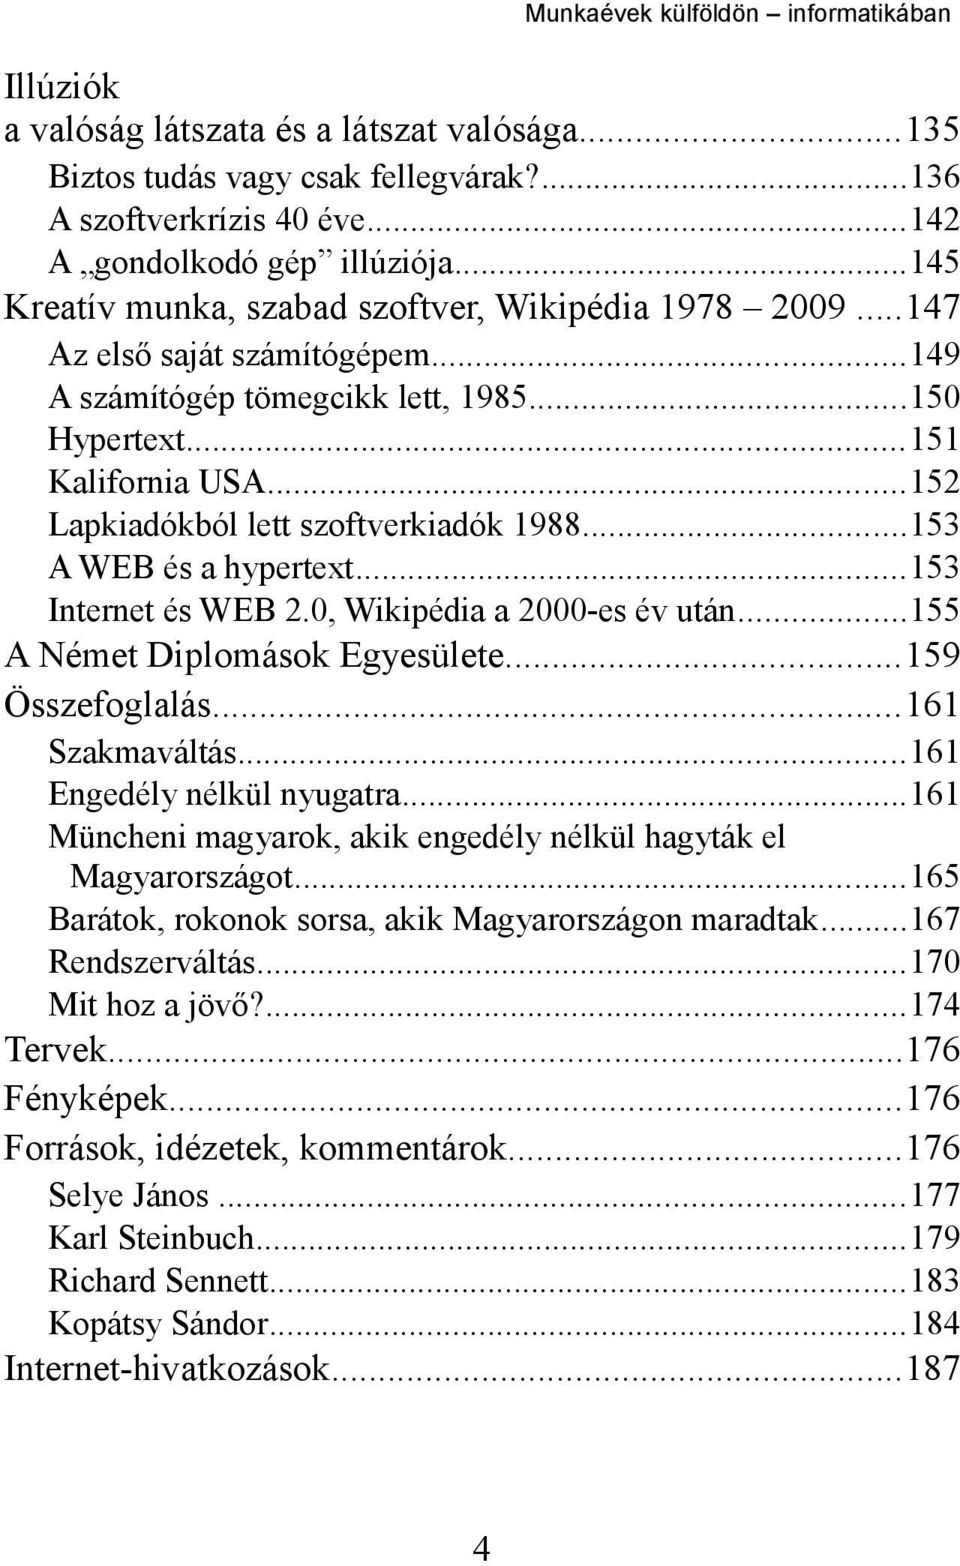 ..152 Lapkiadókból lett szoftverkiadók 1988...153 A WEB és a hypertext...153 Internet és WEB 2.0, Wikipédia a 2000-es év után...155 A Német Diplomások Egyesülete...159 Összefoglalás...161 Szakmaváltás.